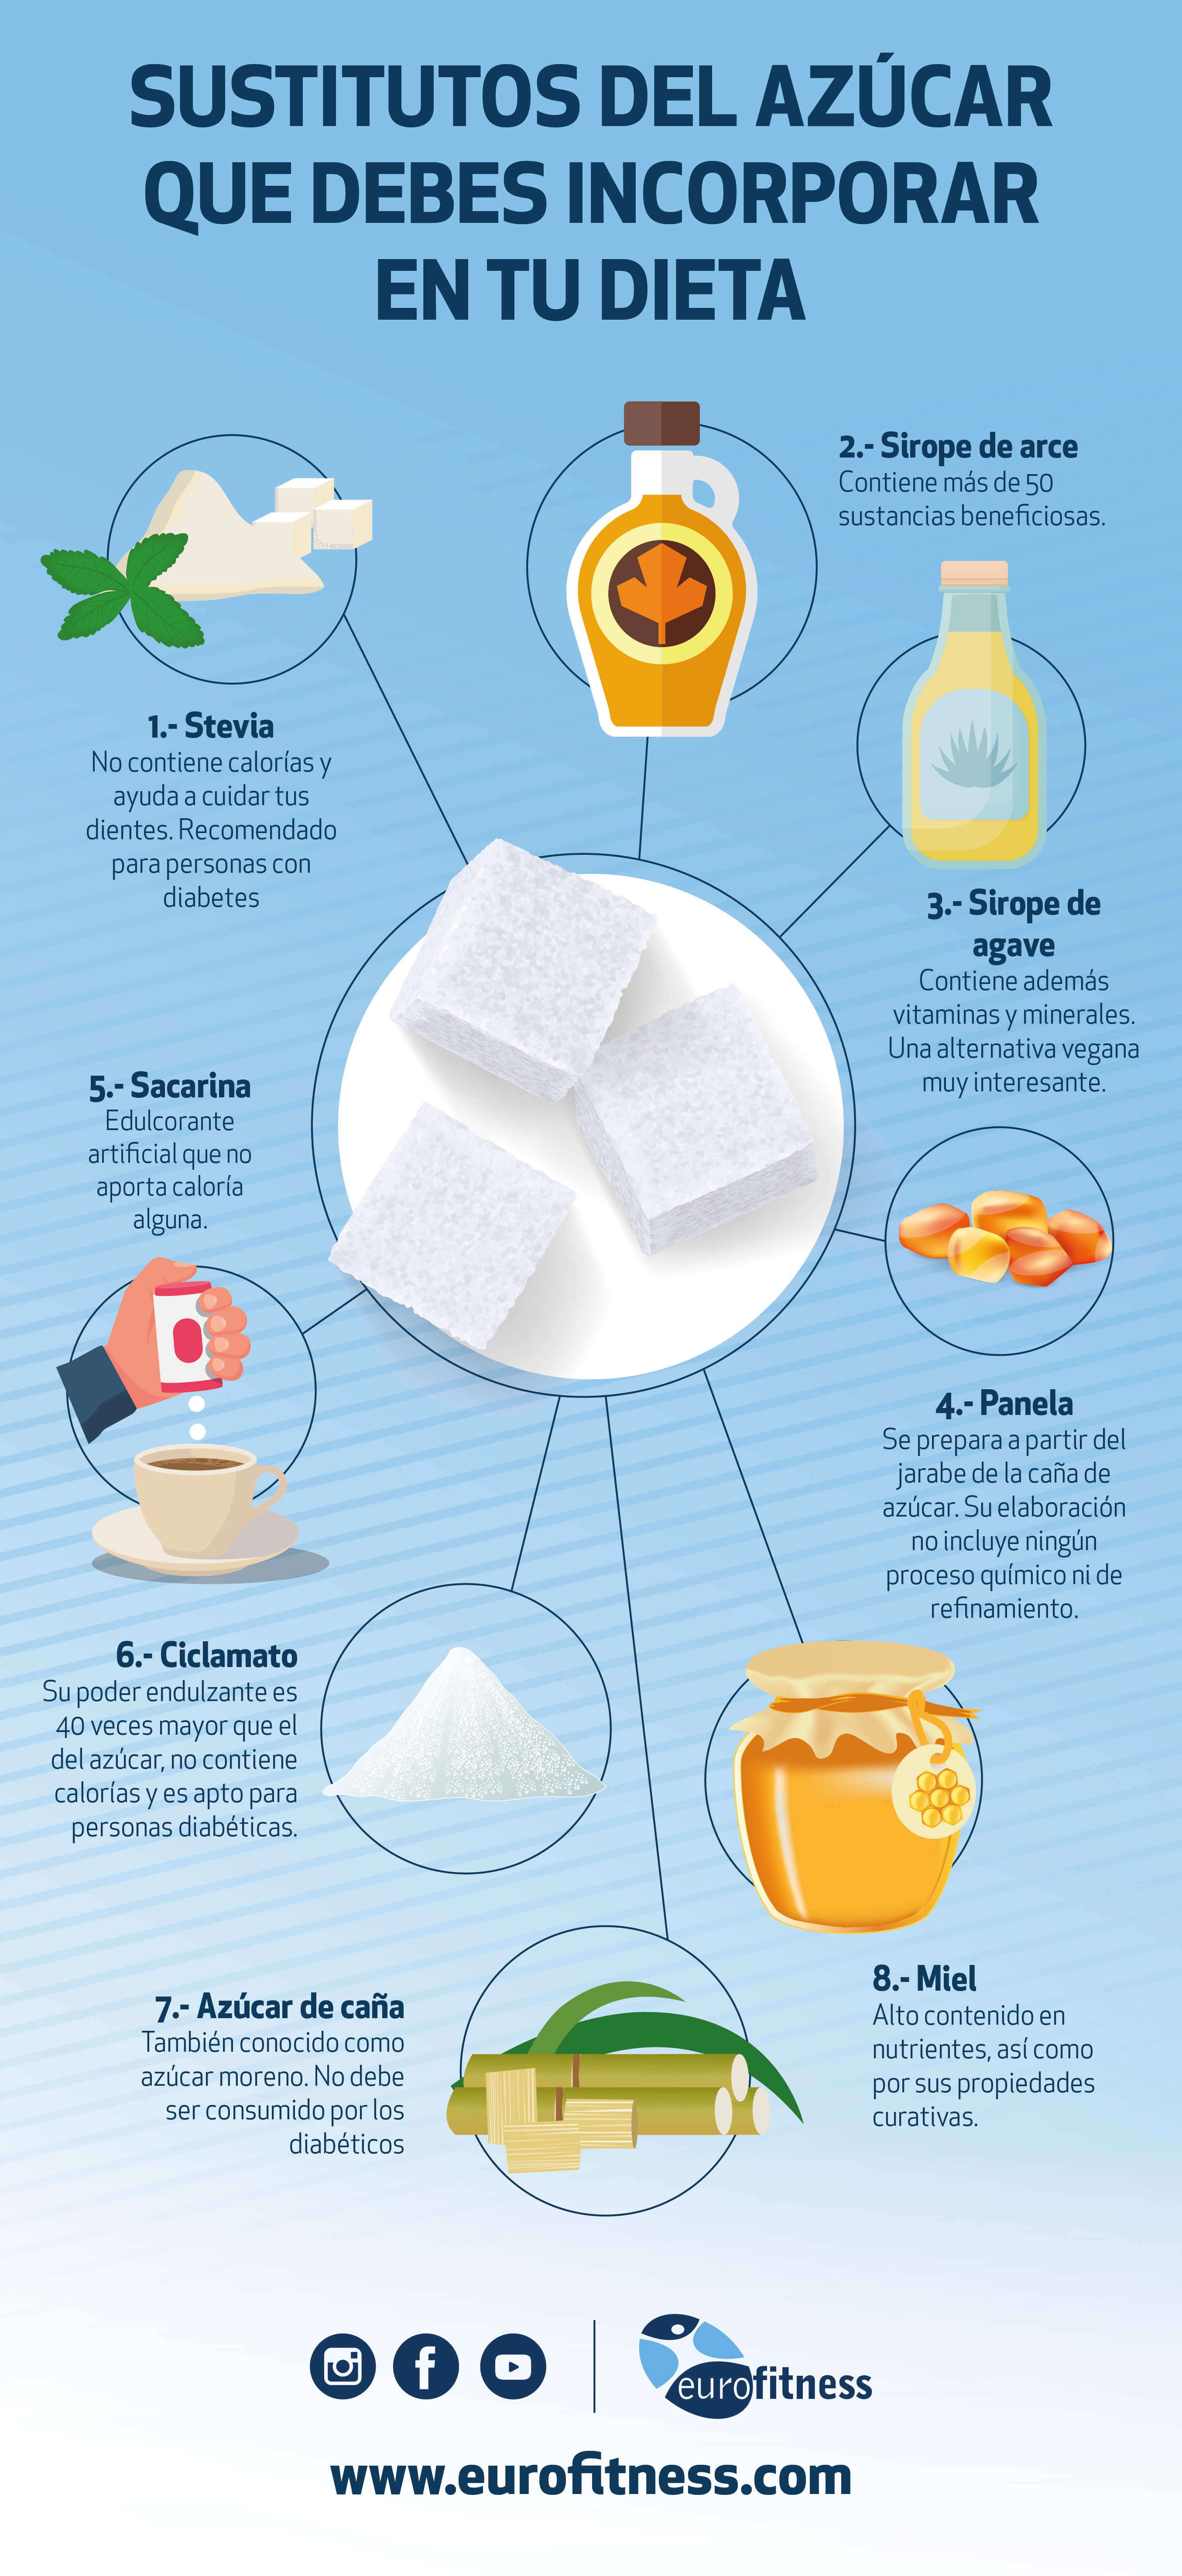 ¿Qué es lo mejor para reemplazar el azúcar?